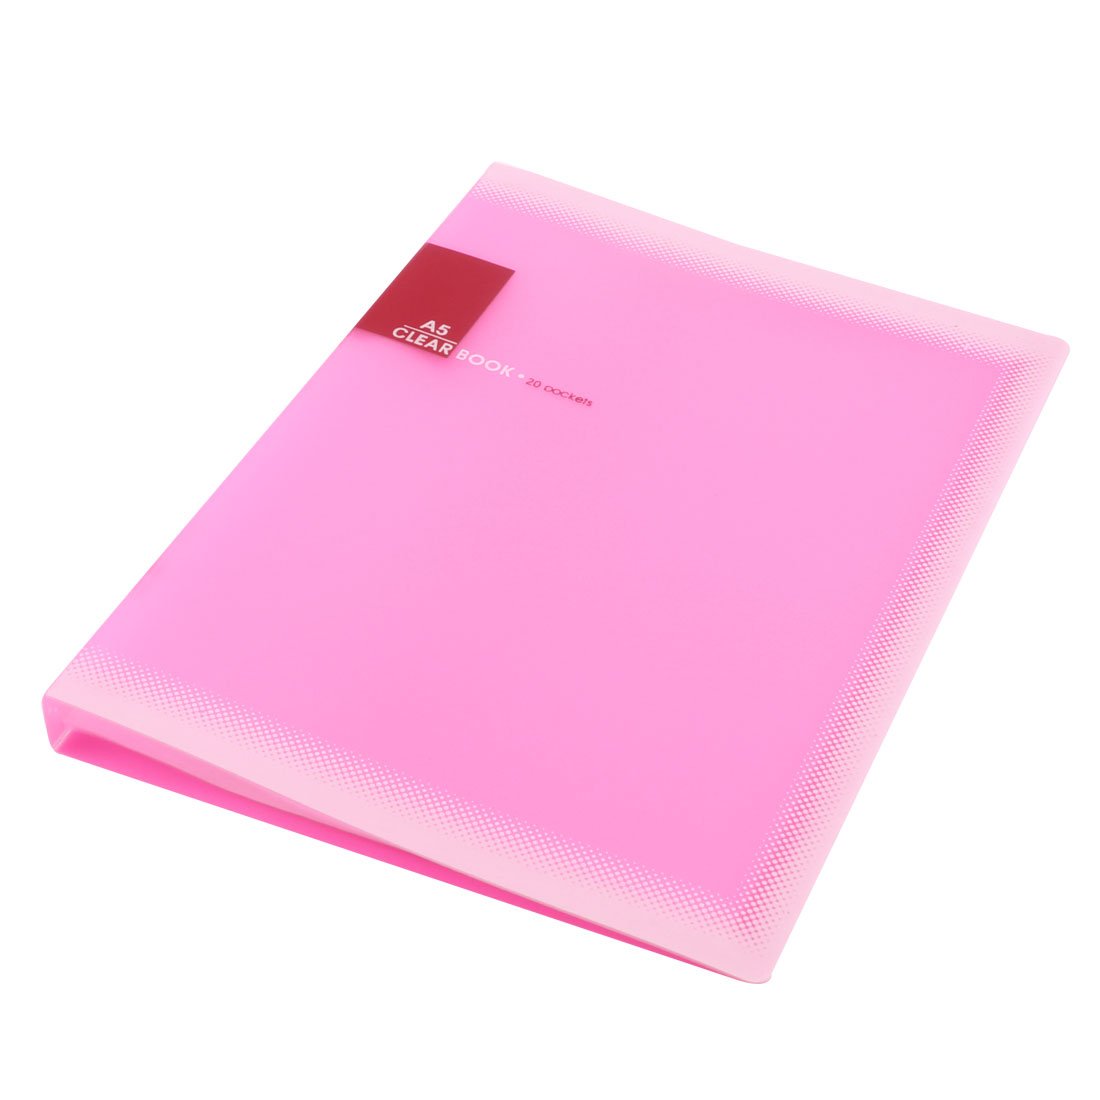 2015 3 Sets X Plastic A5 Paper 20 Pockets File Document Folder Holder, Pink